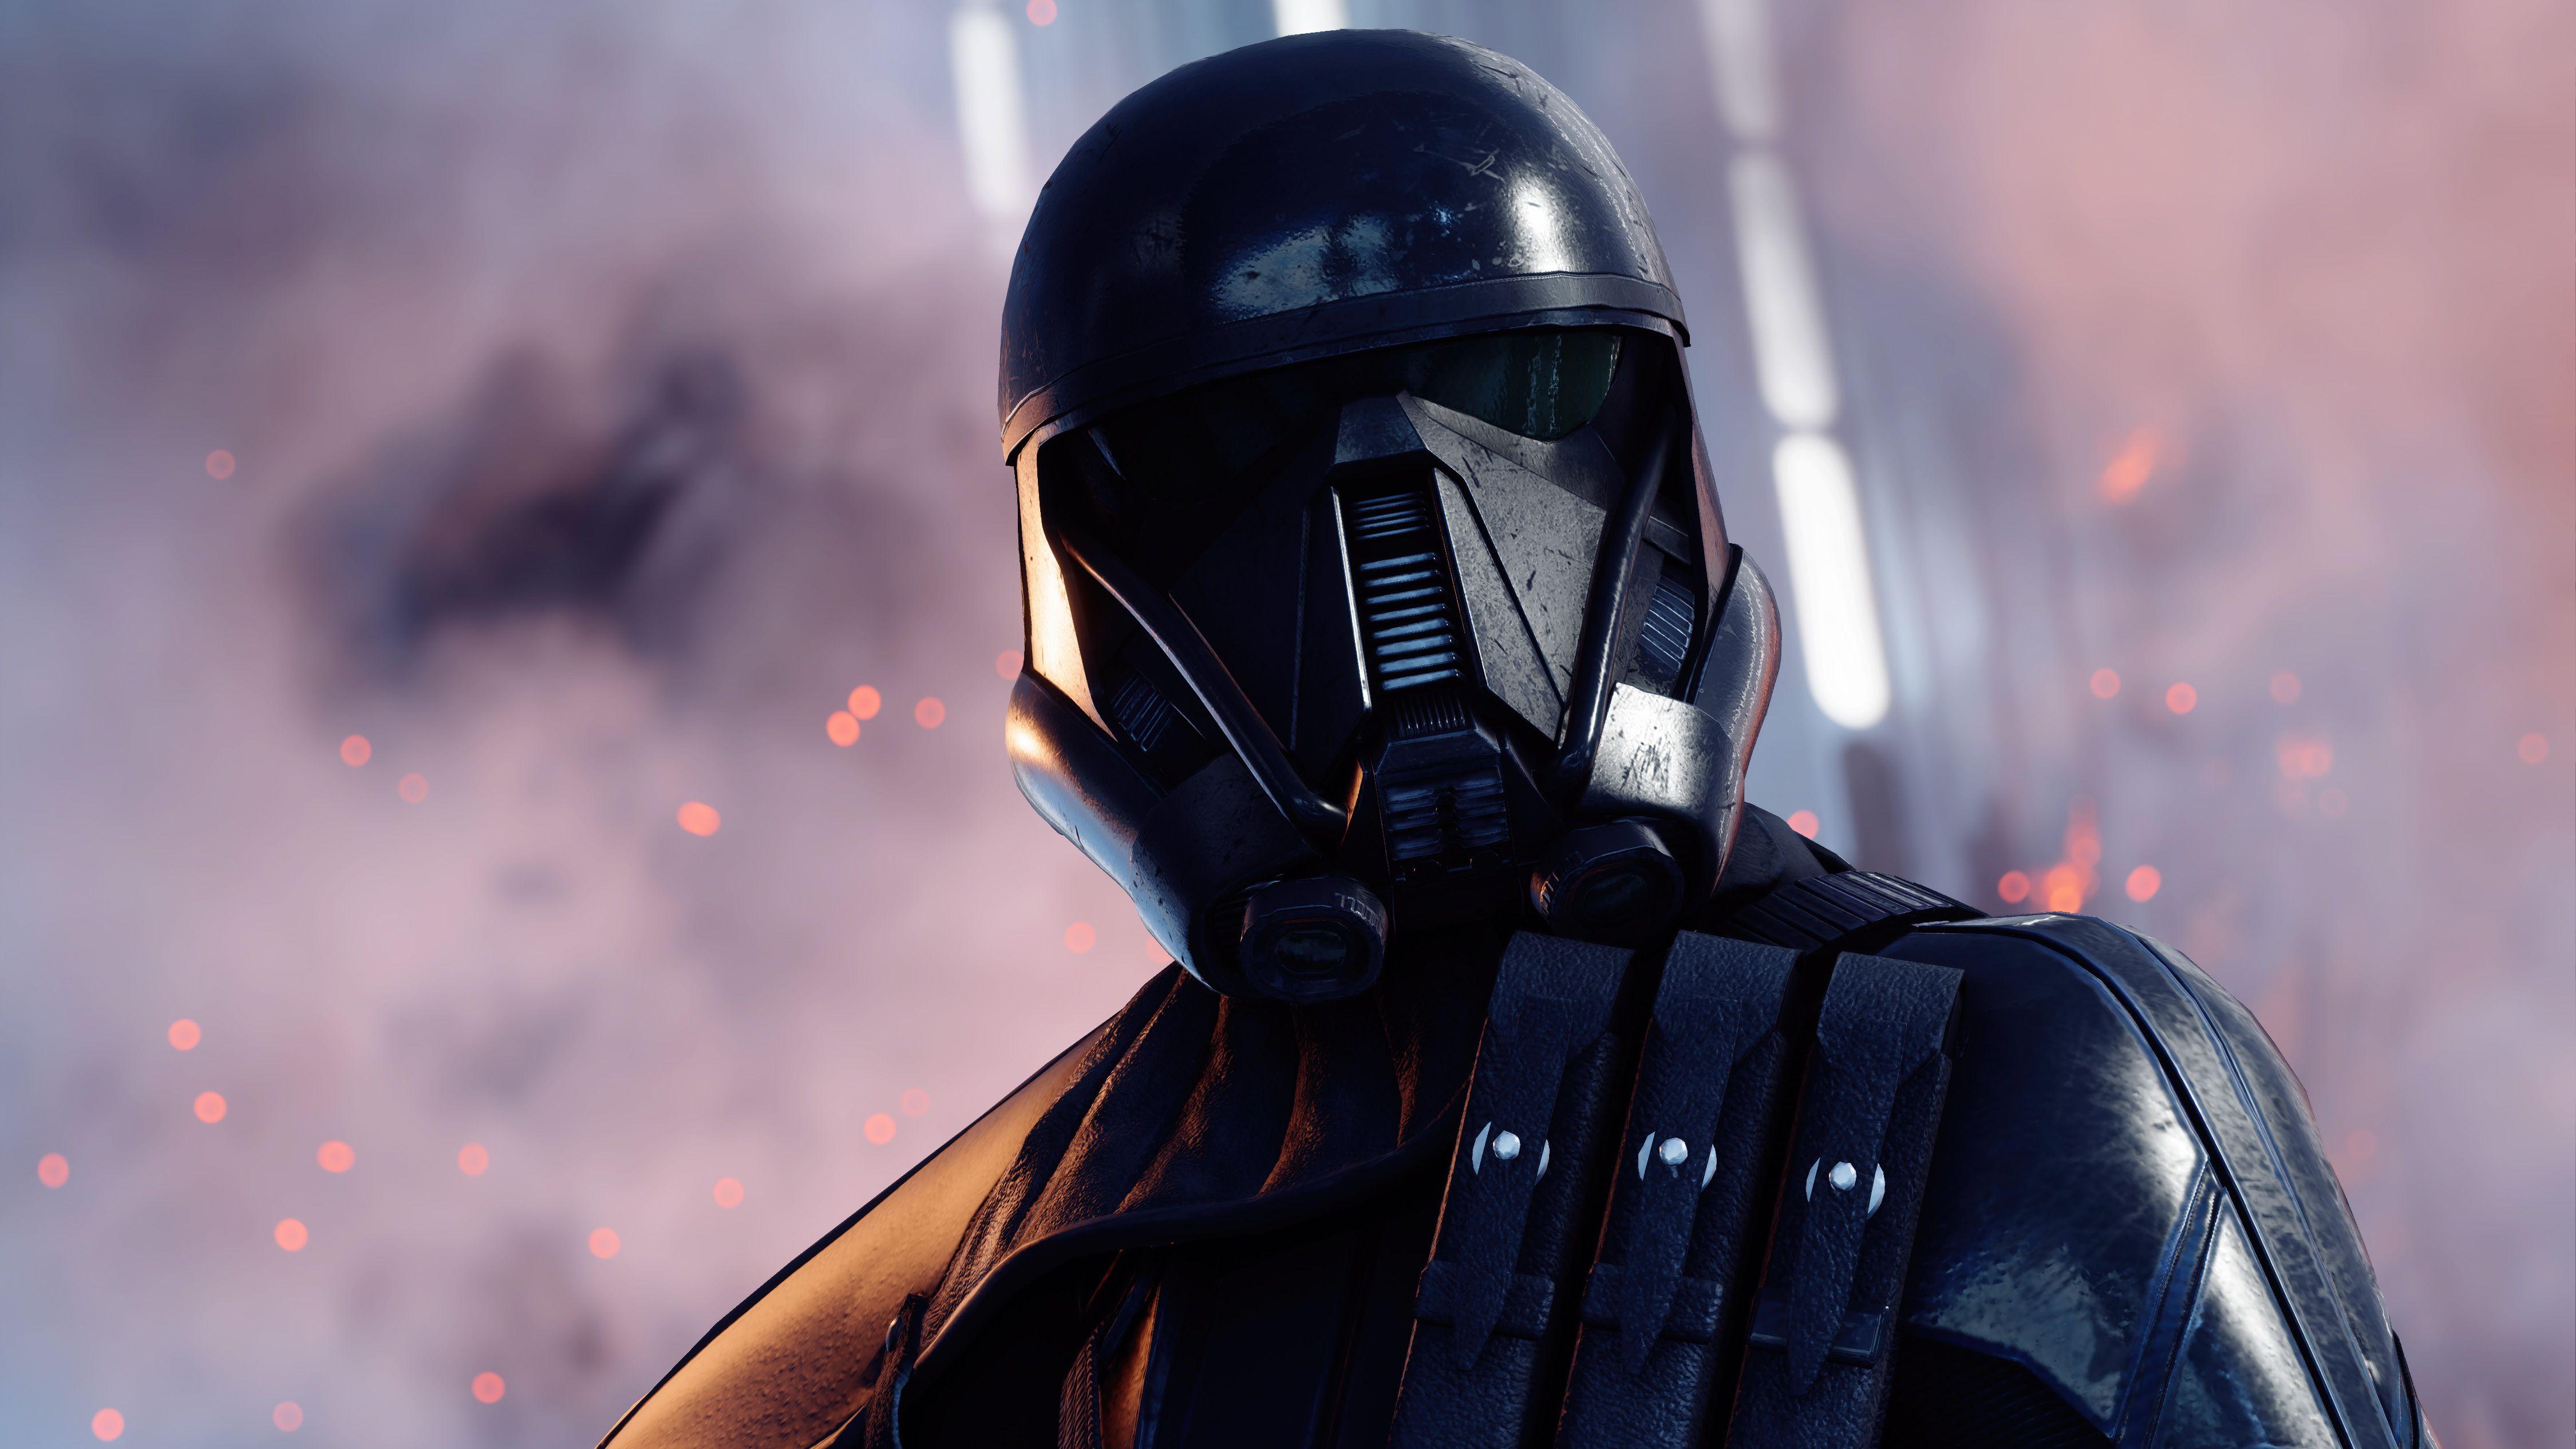 star wars battlefront 2 death troopers mod